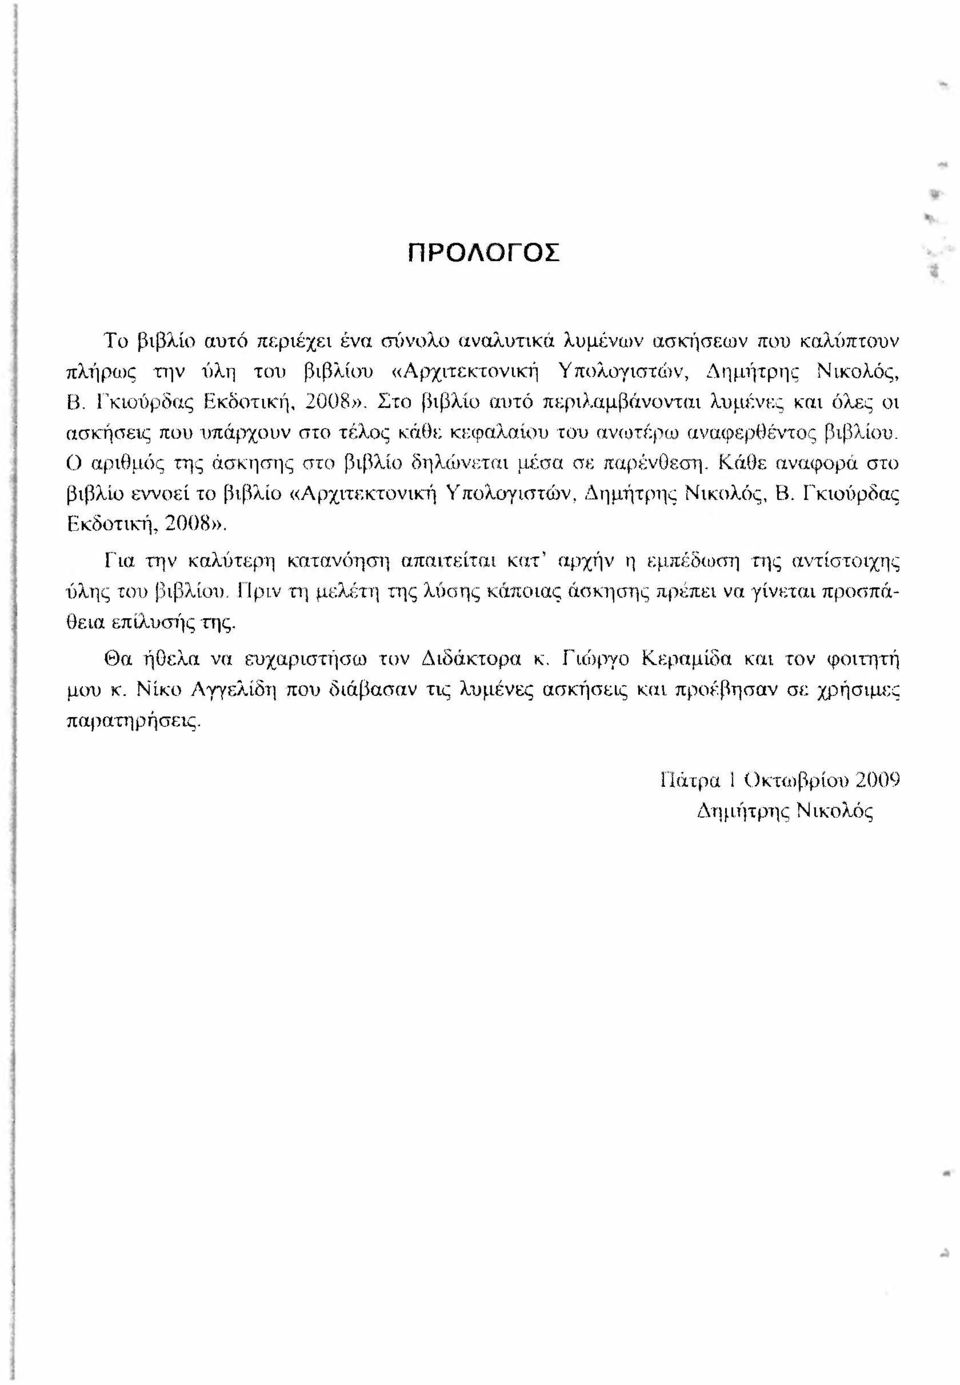 Κάθε αναφορά στο βιβλίο εννοεί το βιβλίο «Αρχιτεκτονική Υπολογιστών, Δημήτρης Νικολός, Β. Γκιούρδας Εκδοτική, 2008».